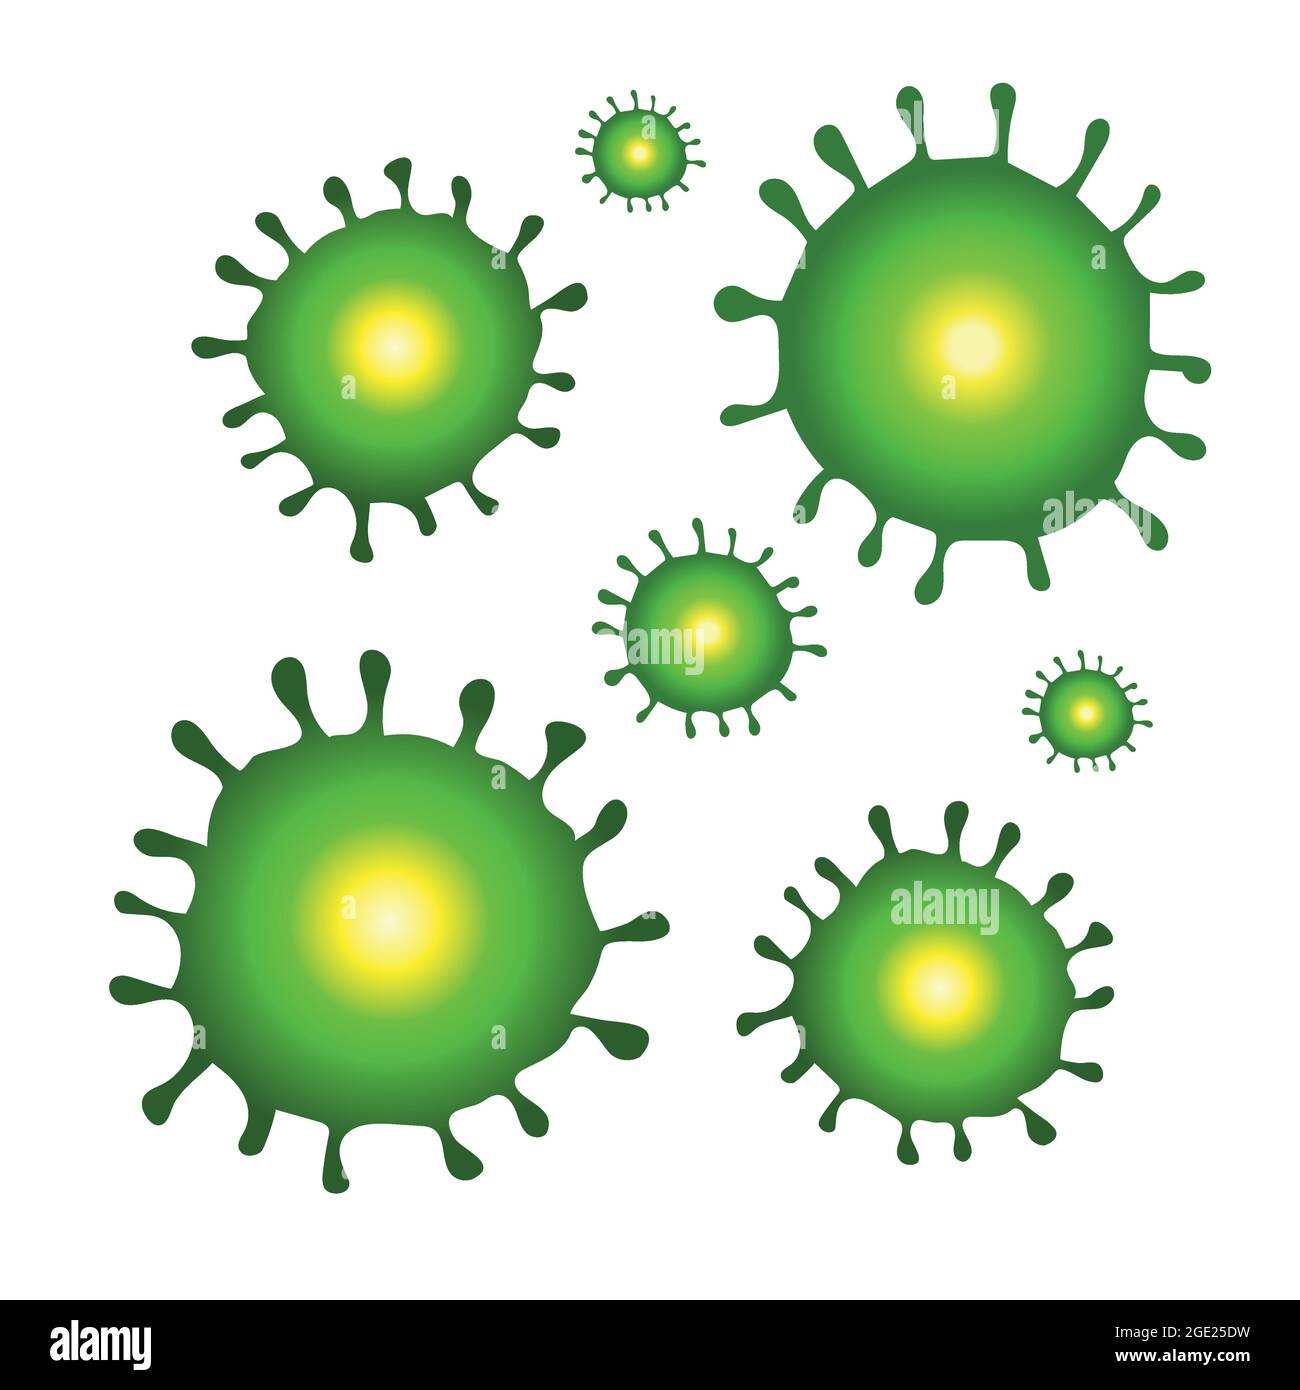 Virus pattern vector isolated on white. Corona virus icon. Stock Vector